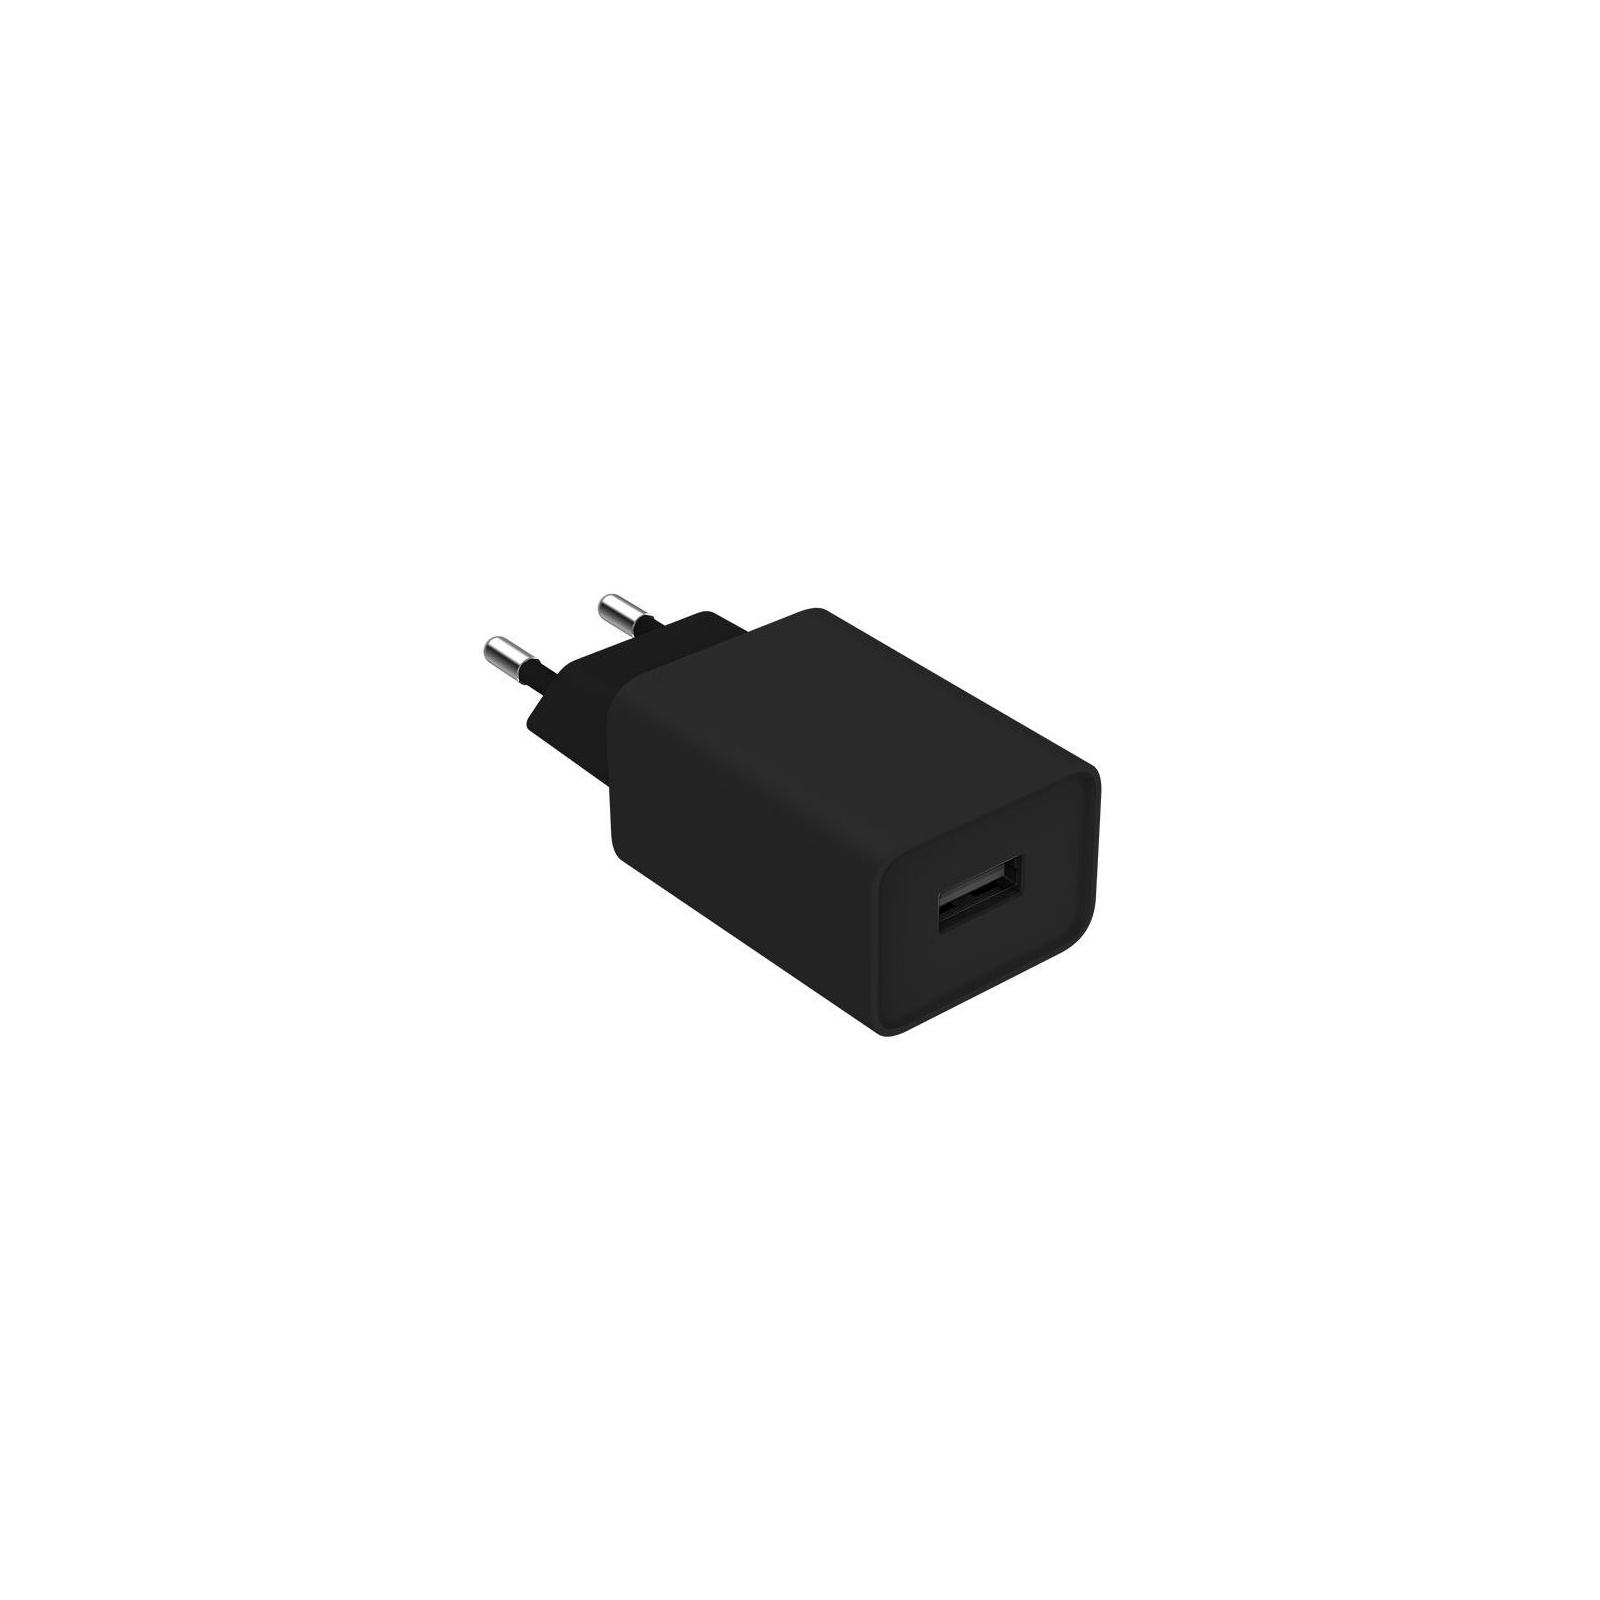 Зарядний пристрій ColorWay 1USB Quick Charge 3.0 (18W) black + cable micro USB (CW-CHS013QCM-BK) зображення 6